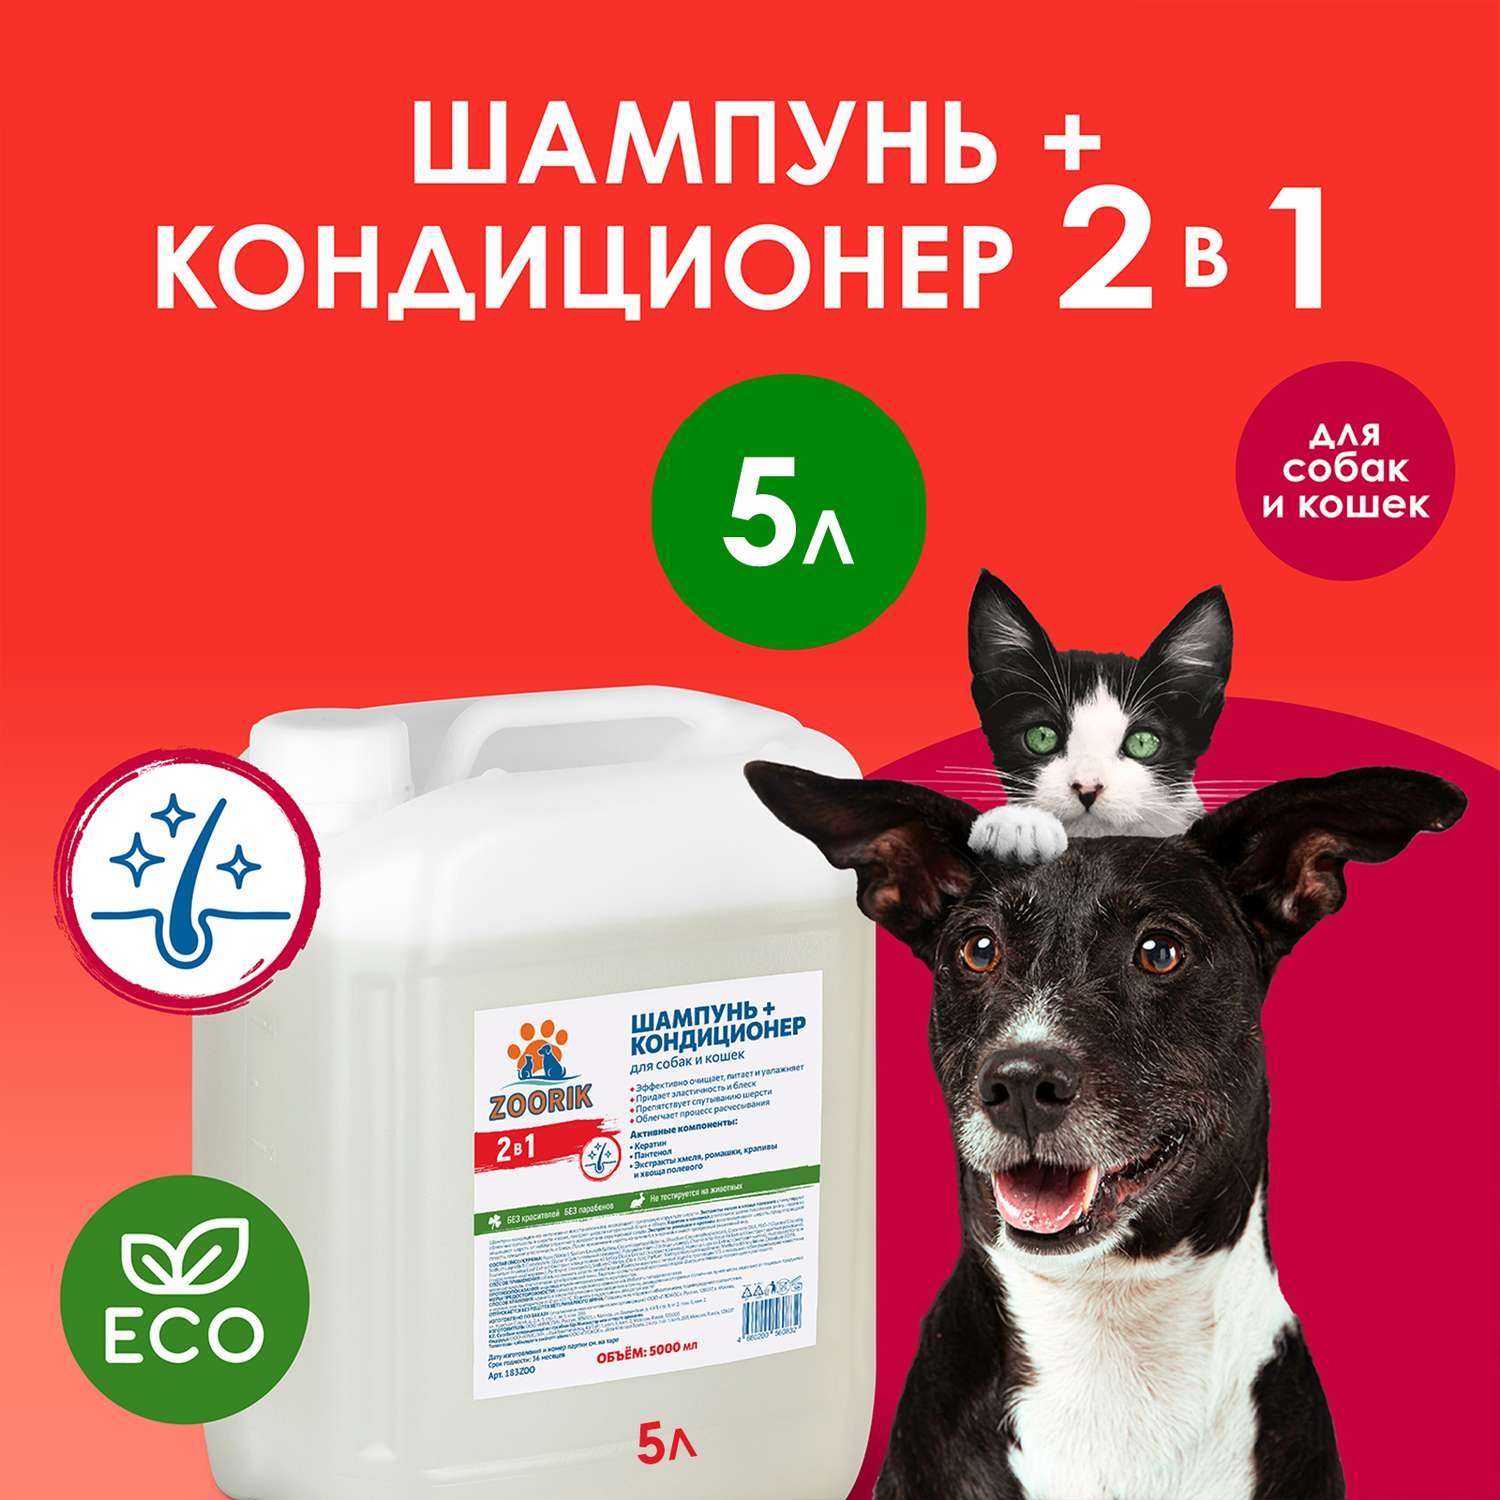 Шампунь-кондиционер ZOORIK для собак и кошек 2 в 1 5000 мл - фото 2